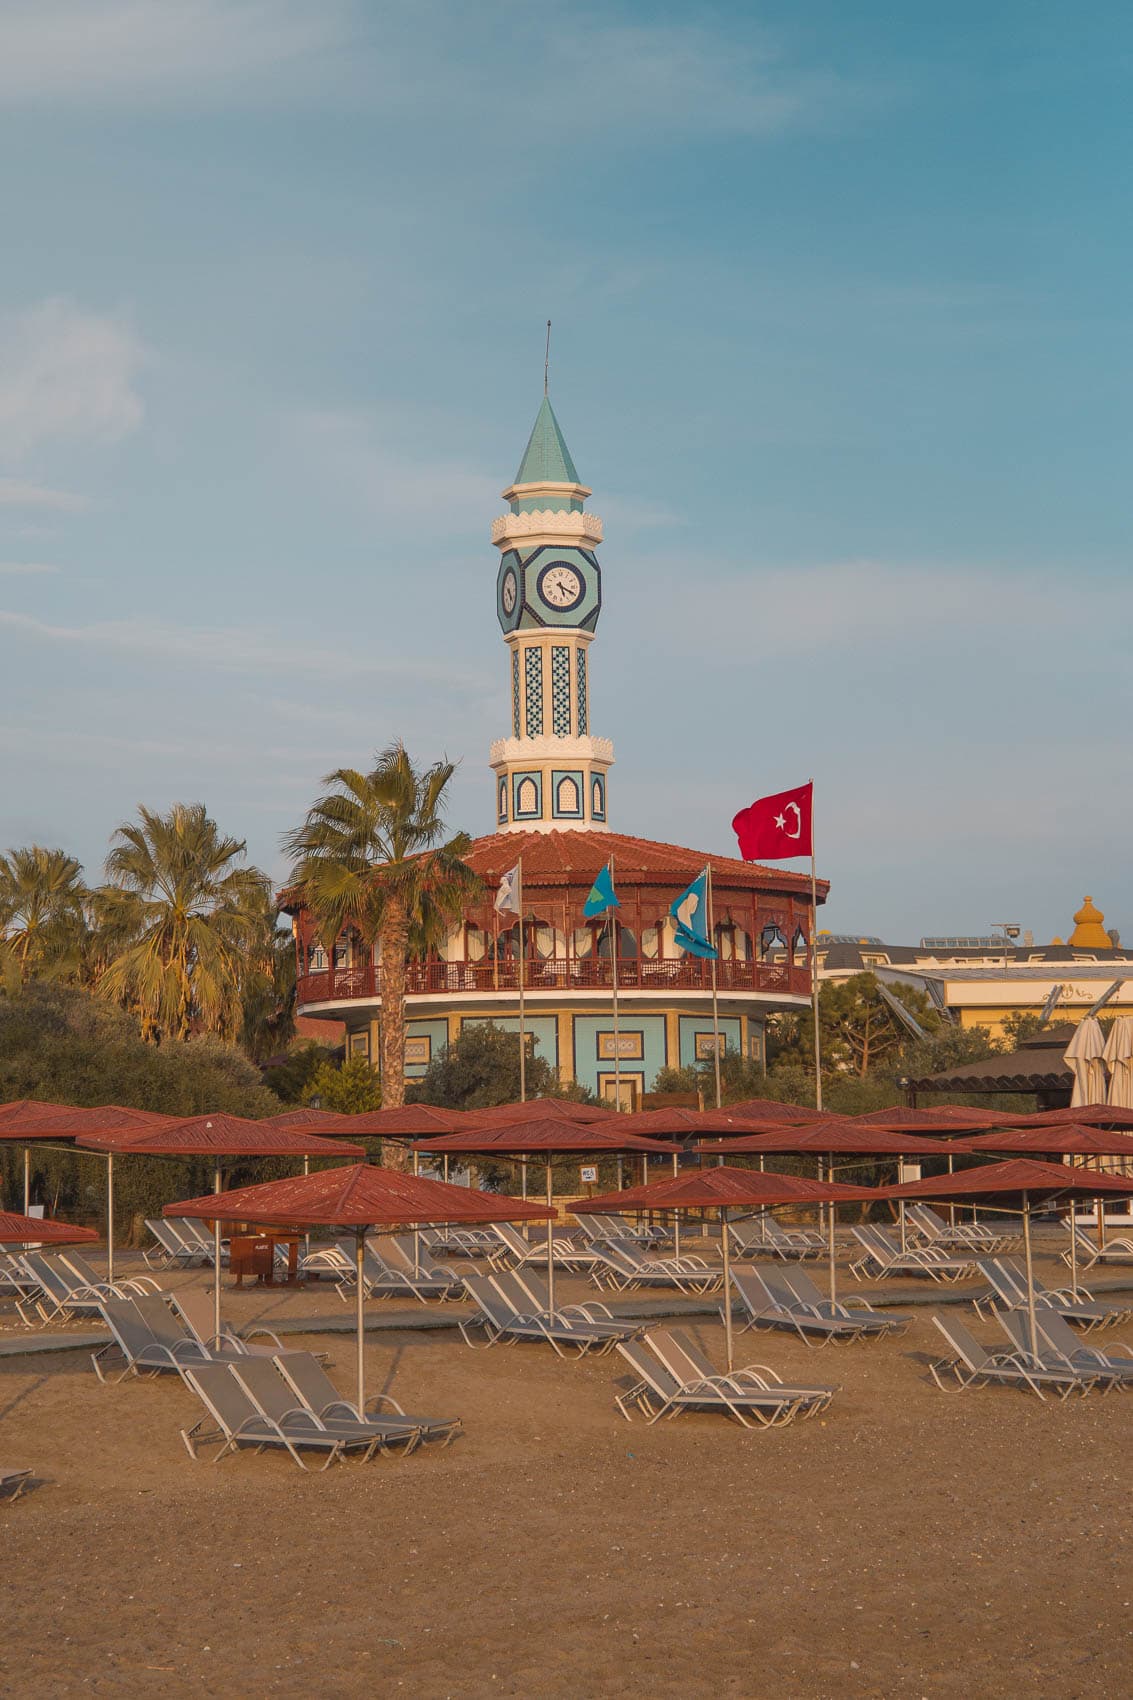 Ali Bey Club Manavgat - mein erste Reise an die türkische Riviera